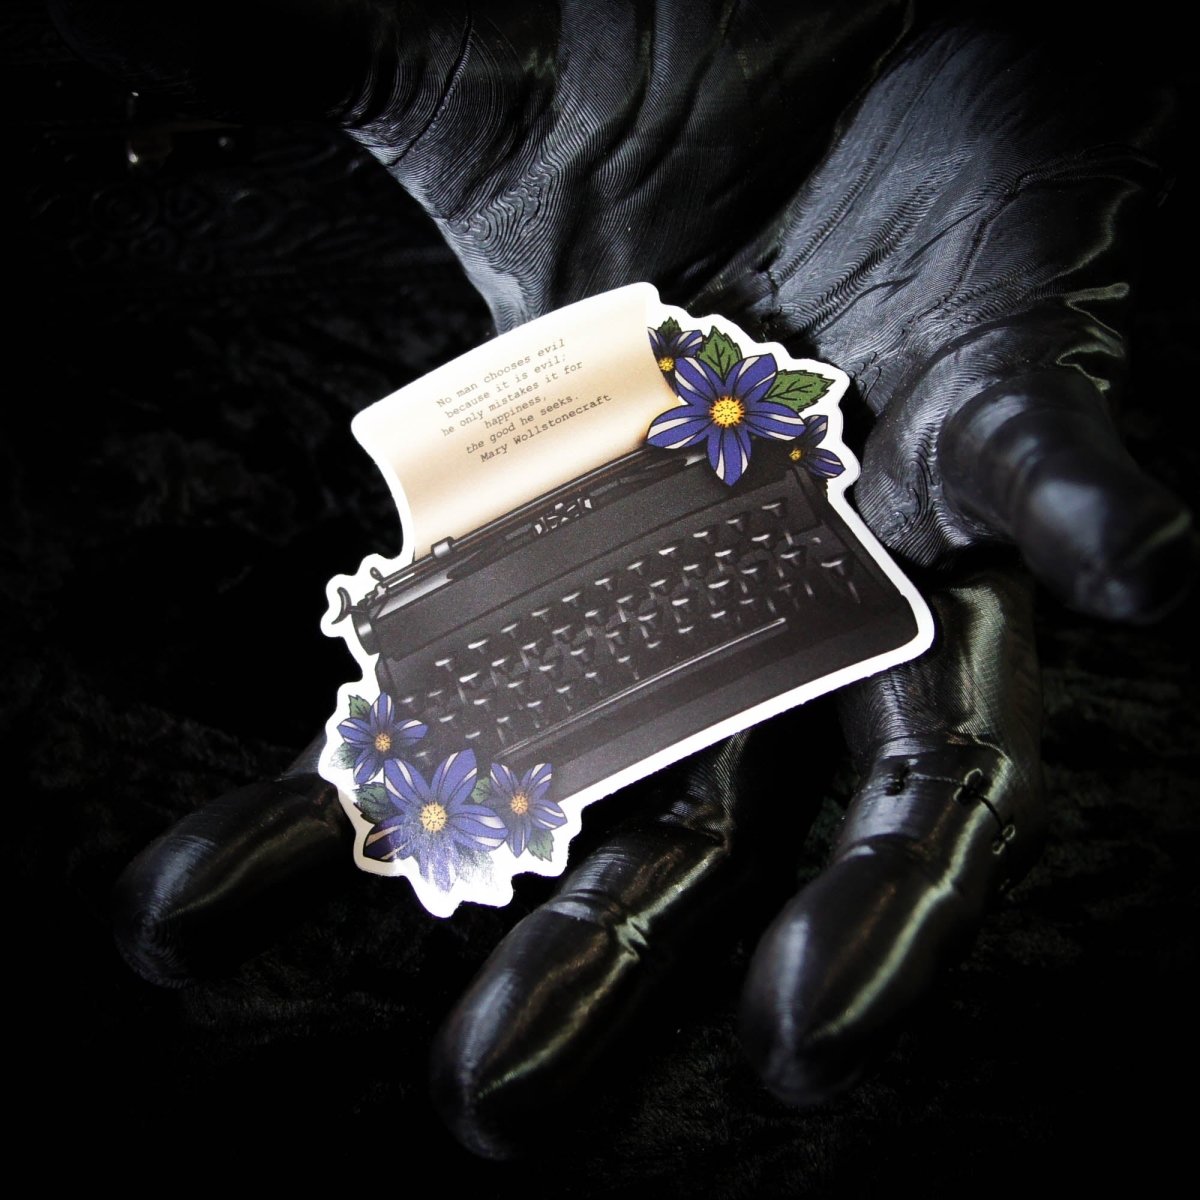 Dark Academia Typewriter Vinyl Sticker - Women Author English Literature Gift